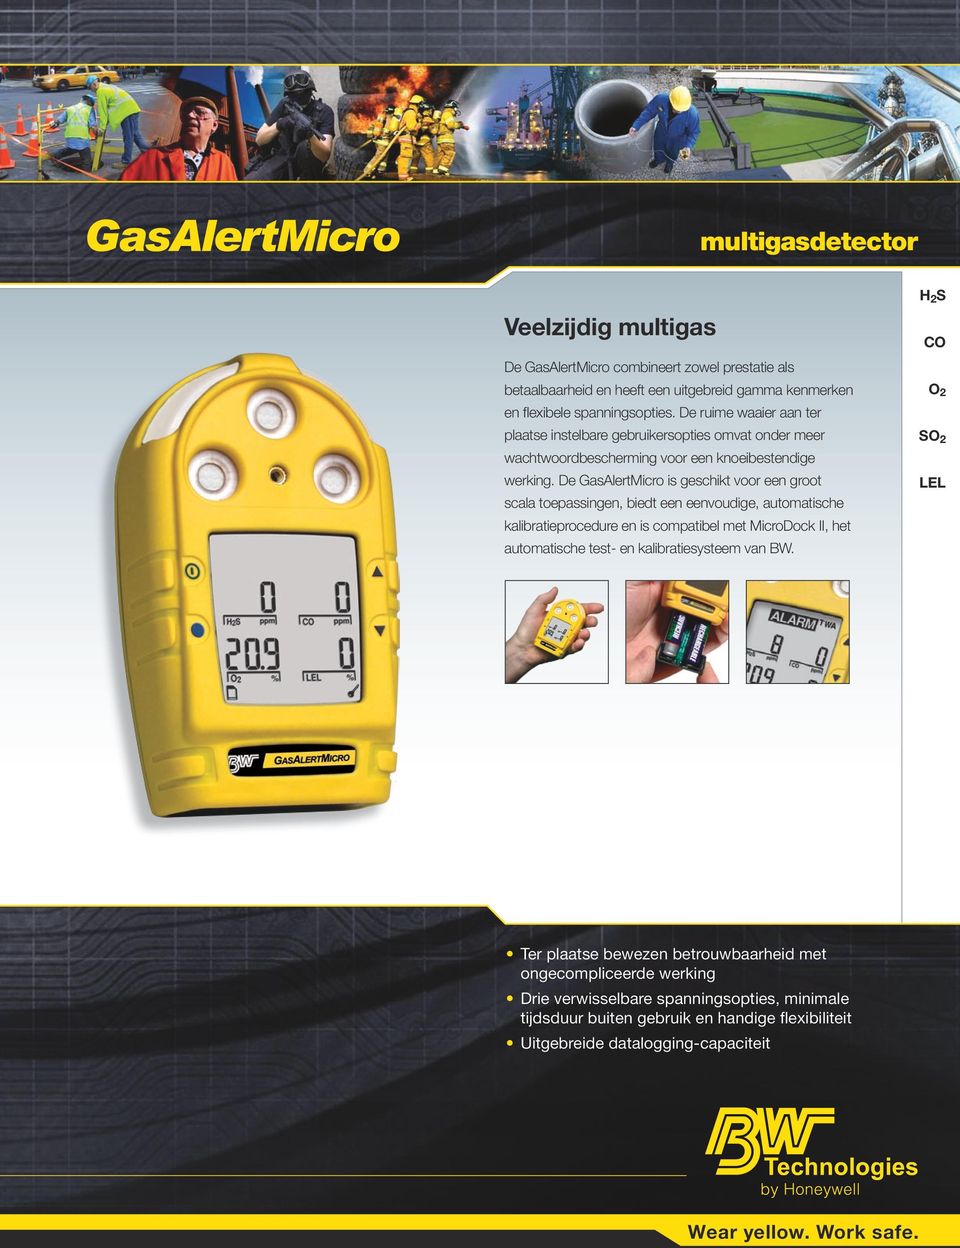 De GasAlertMicro is geschikt voor een groot scala toepassingen, biedt een eenvoudige, automatische kalibratieprocedure en is compatibel met MicroDock II, het automatische test- en